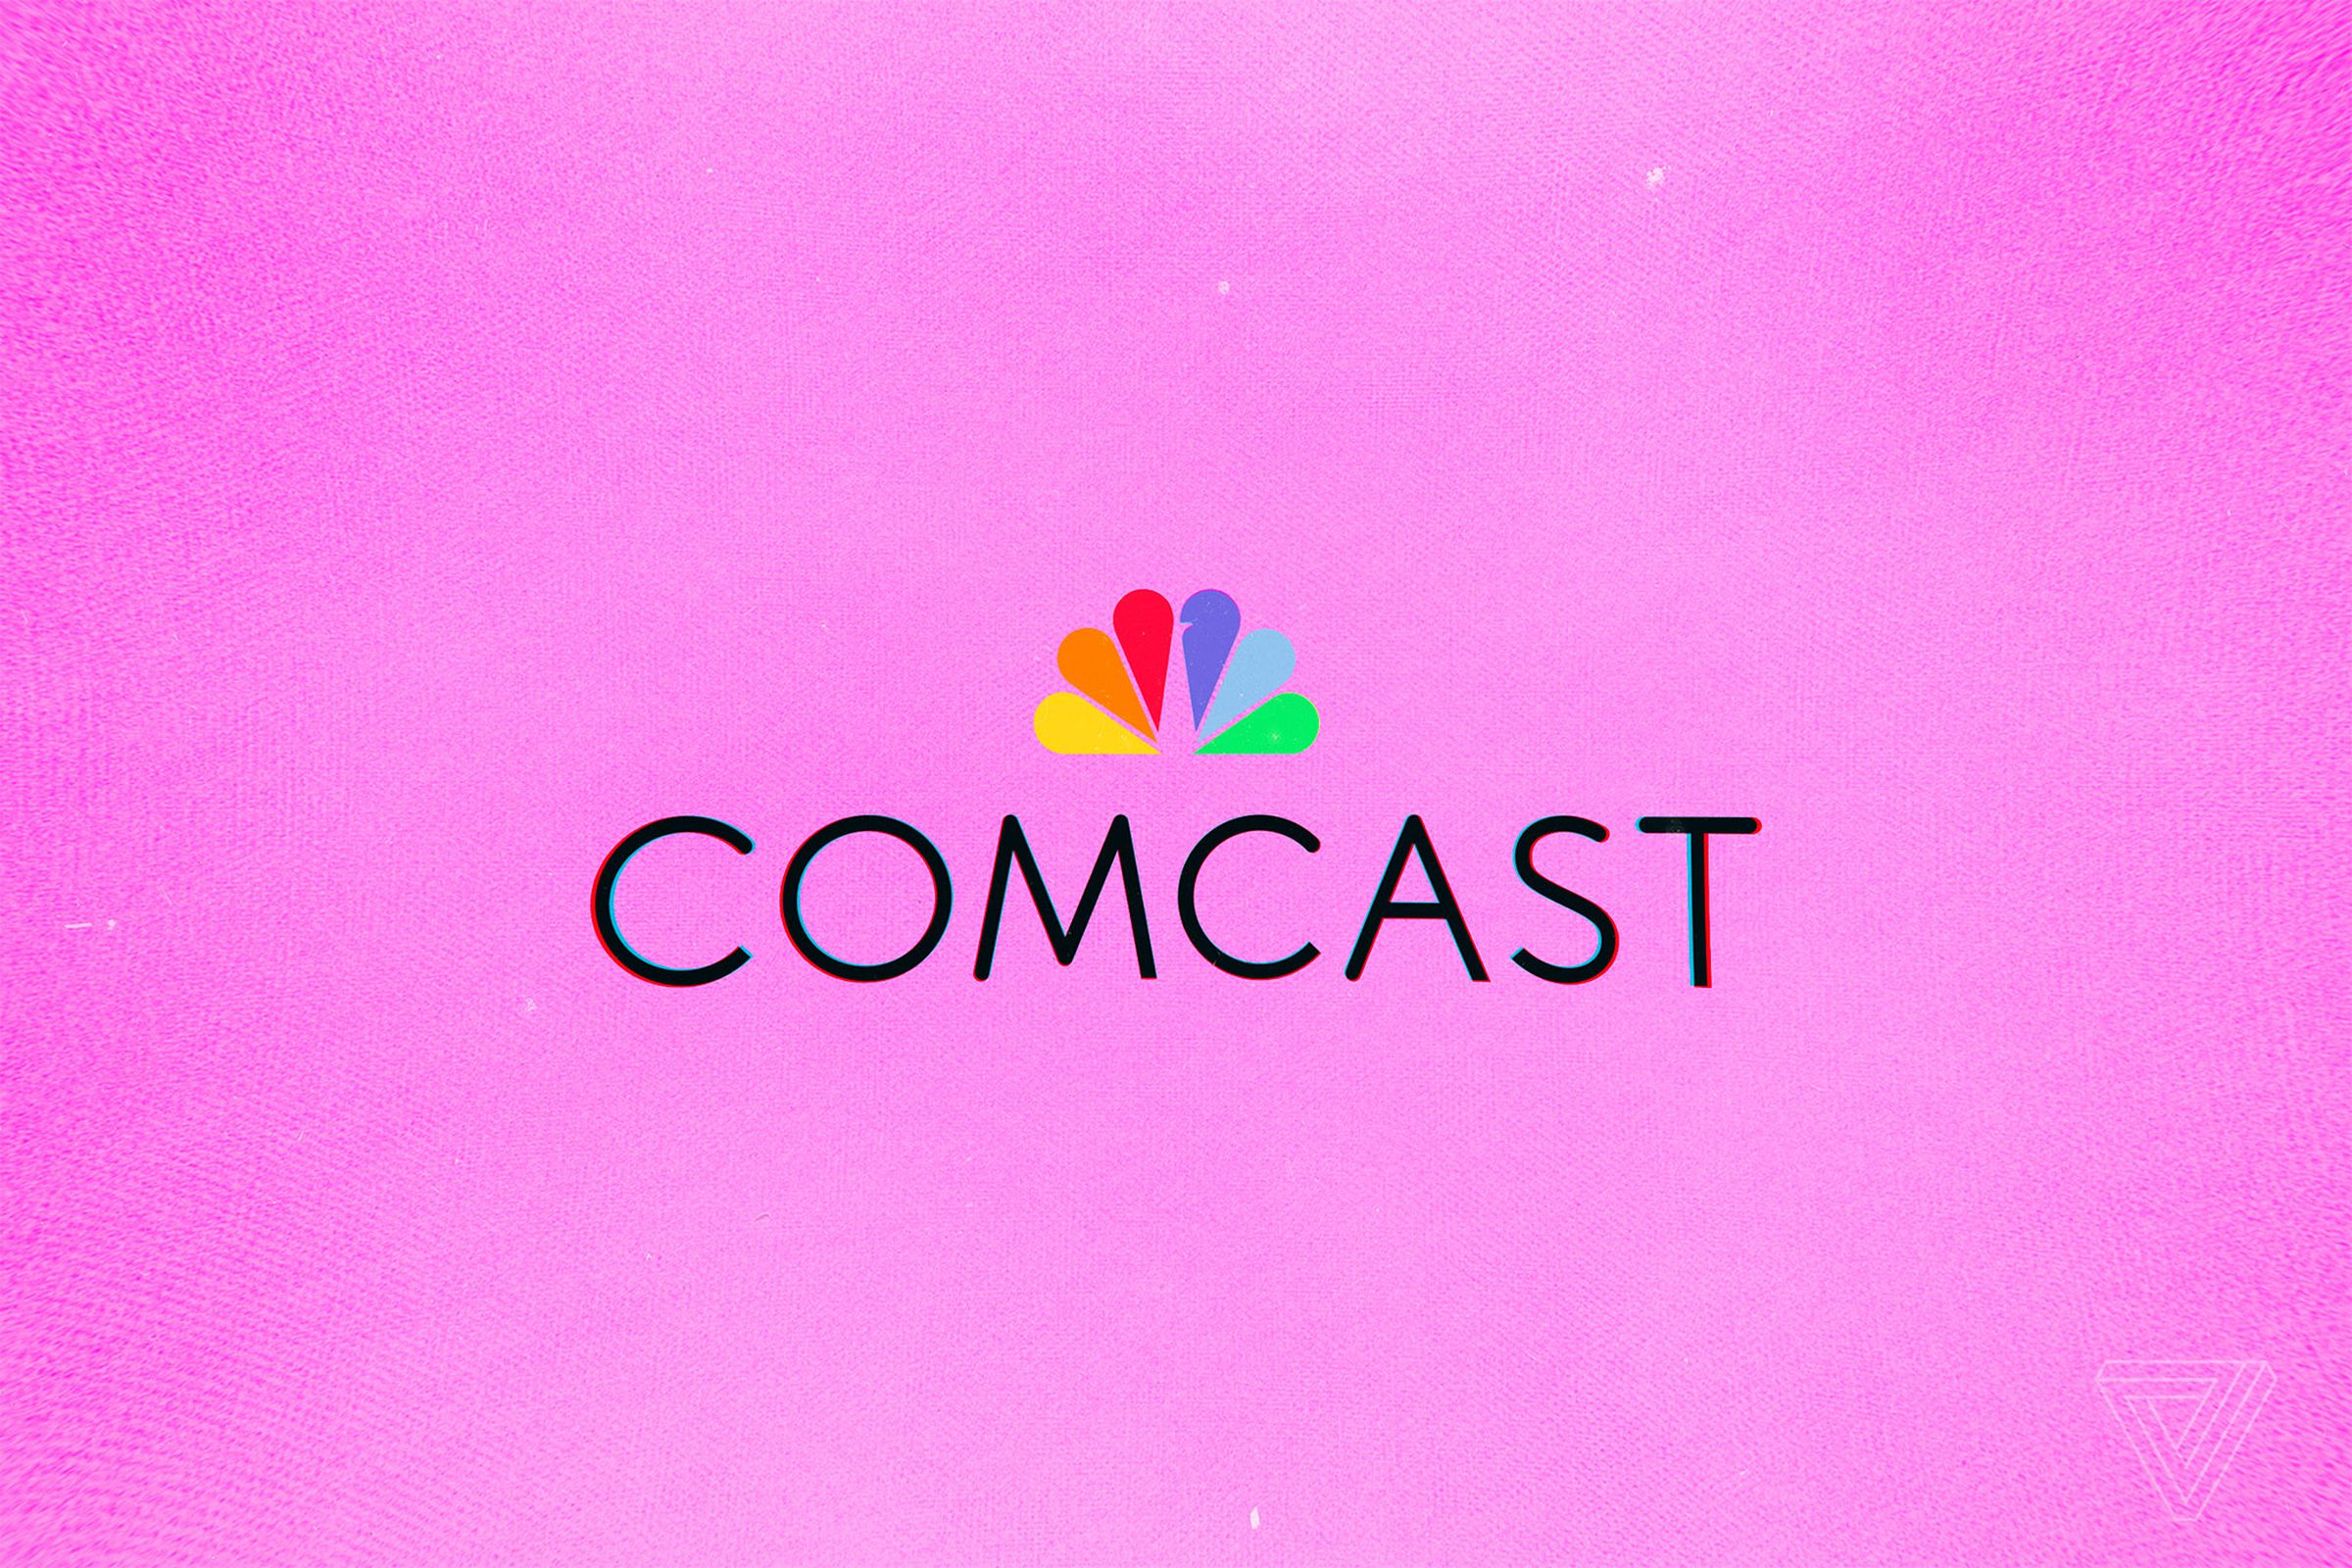 comcast and nbc peacock logo